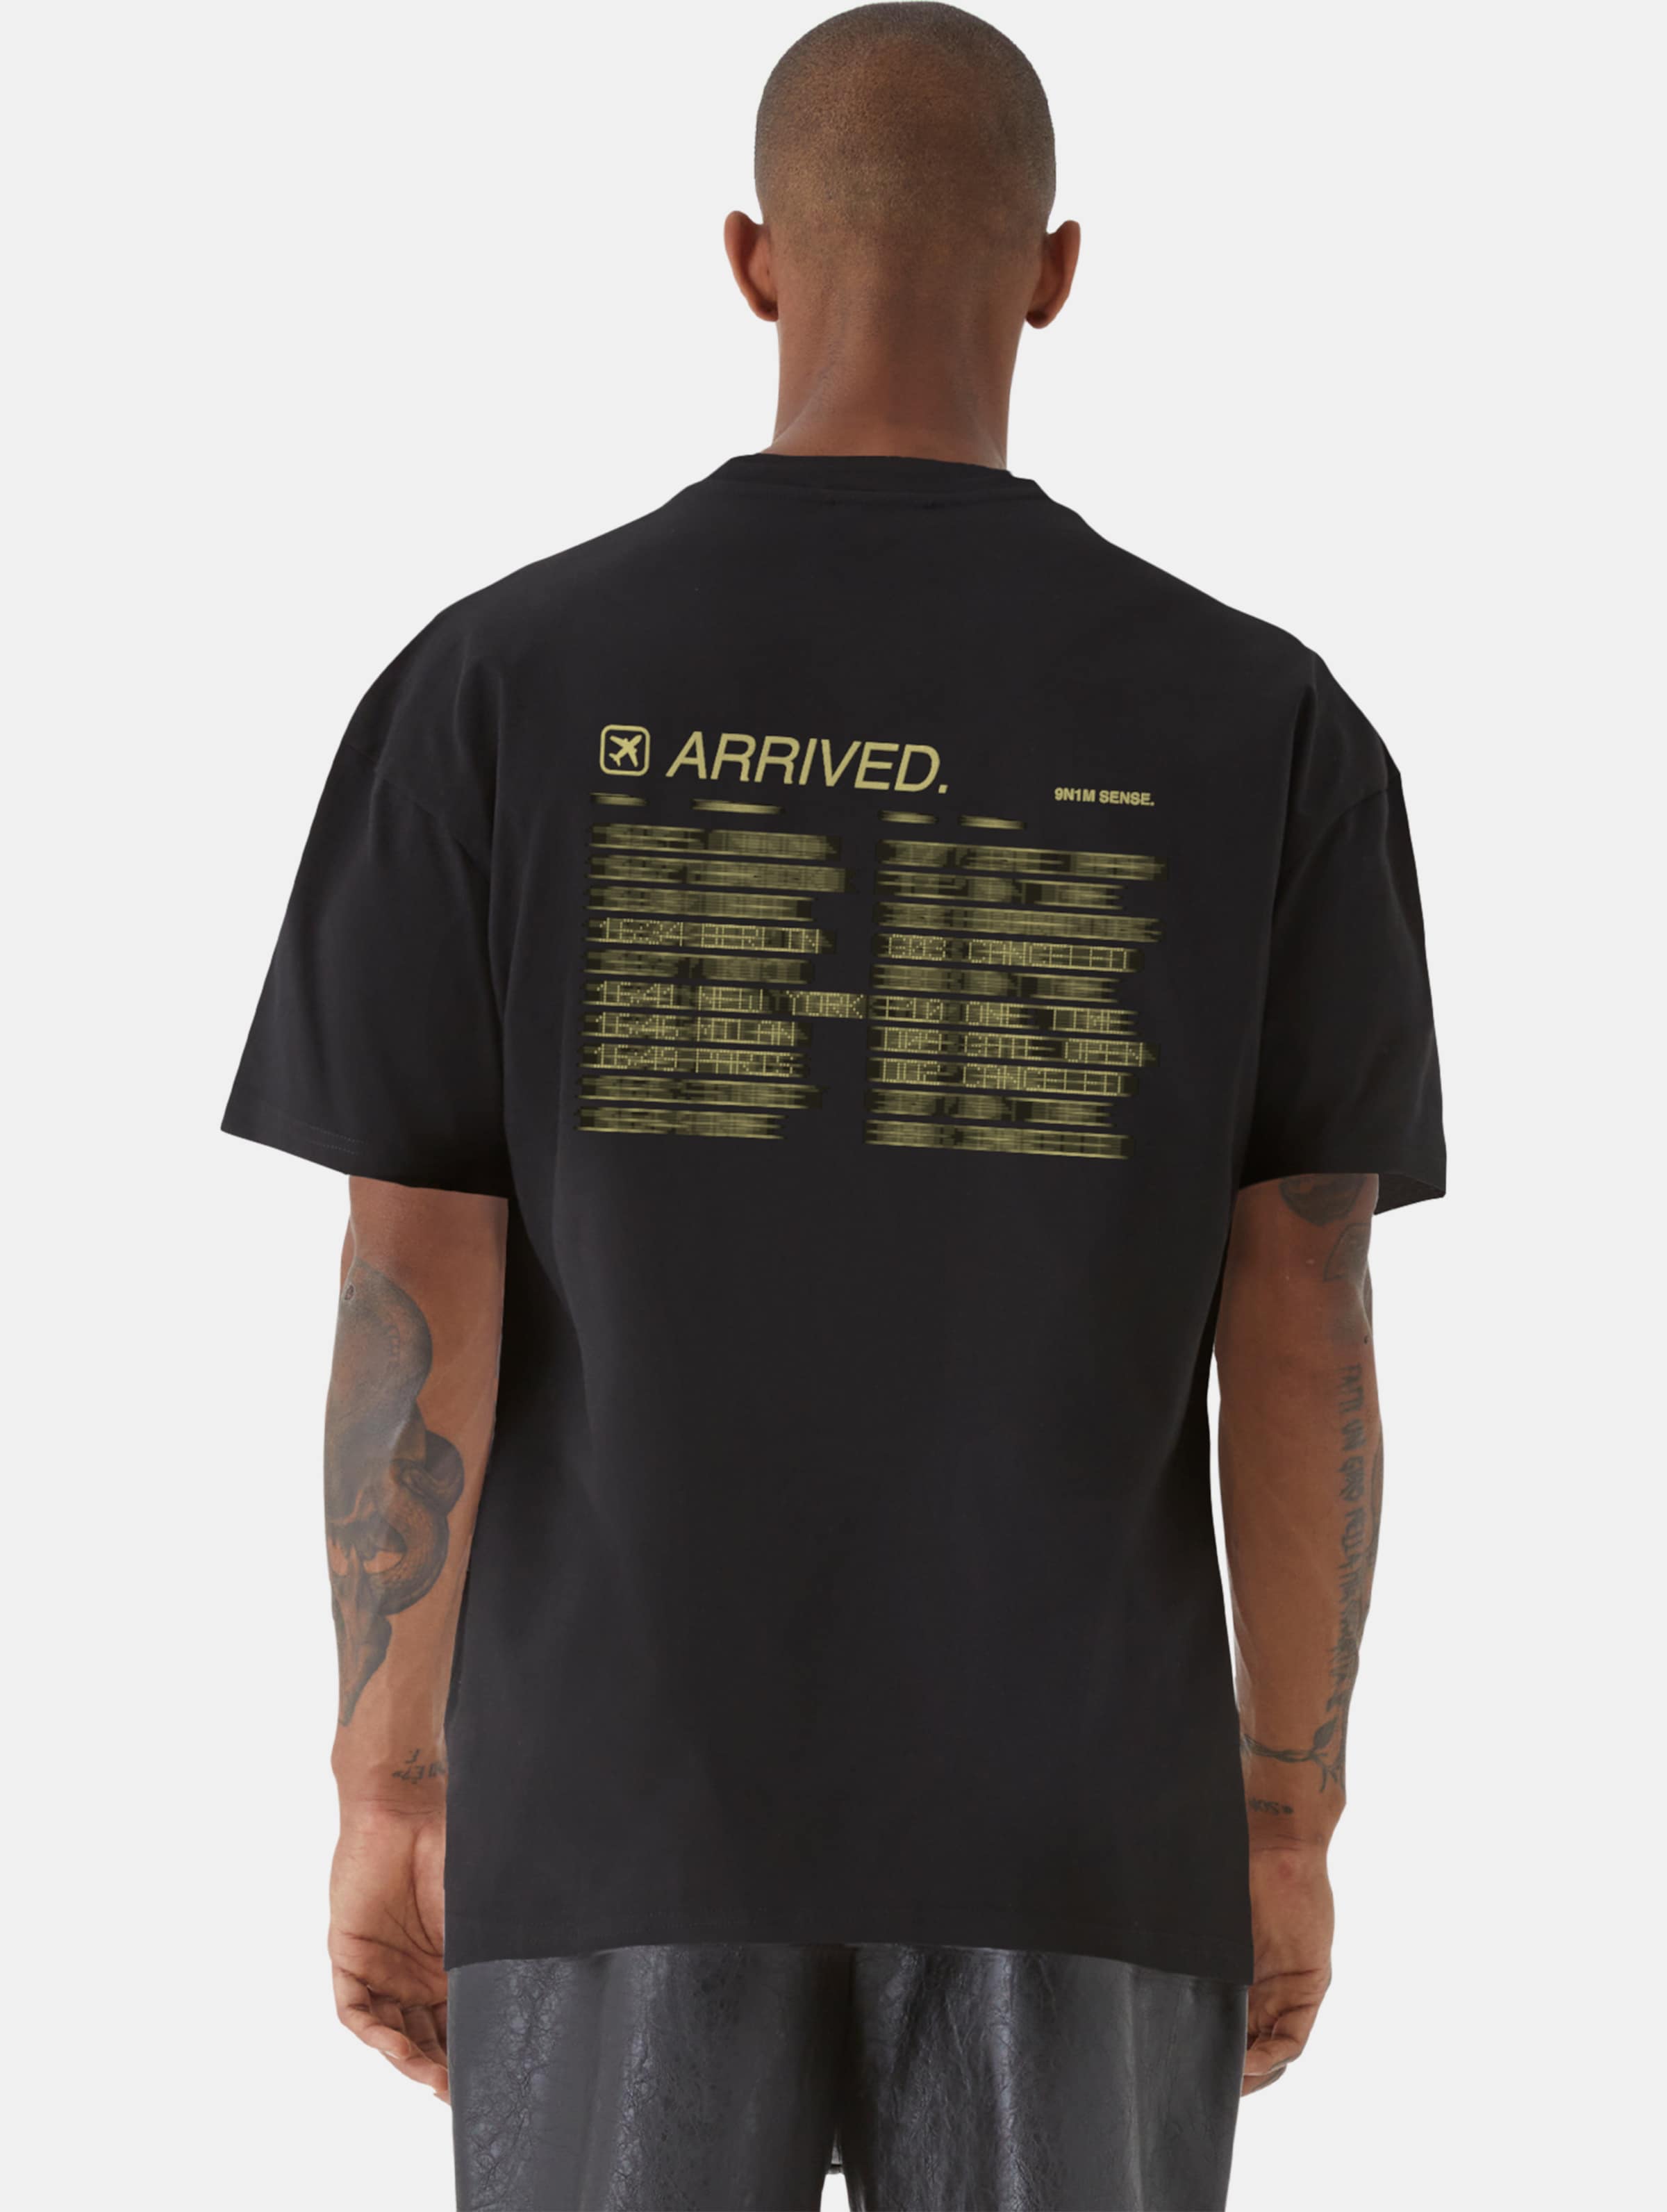 9N1M SENSE ARRIVED T-Shirt Männer,Unisex op kleur zwart, Maat S